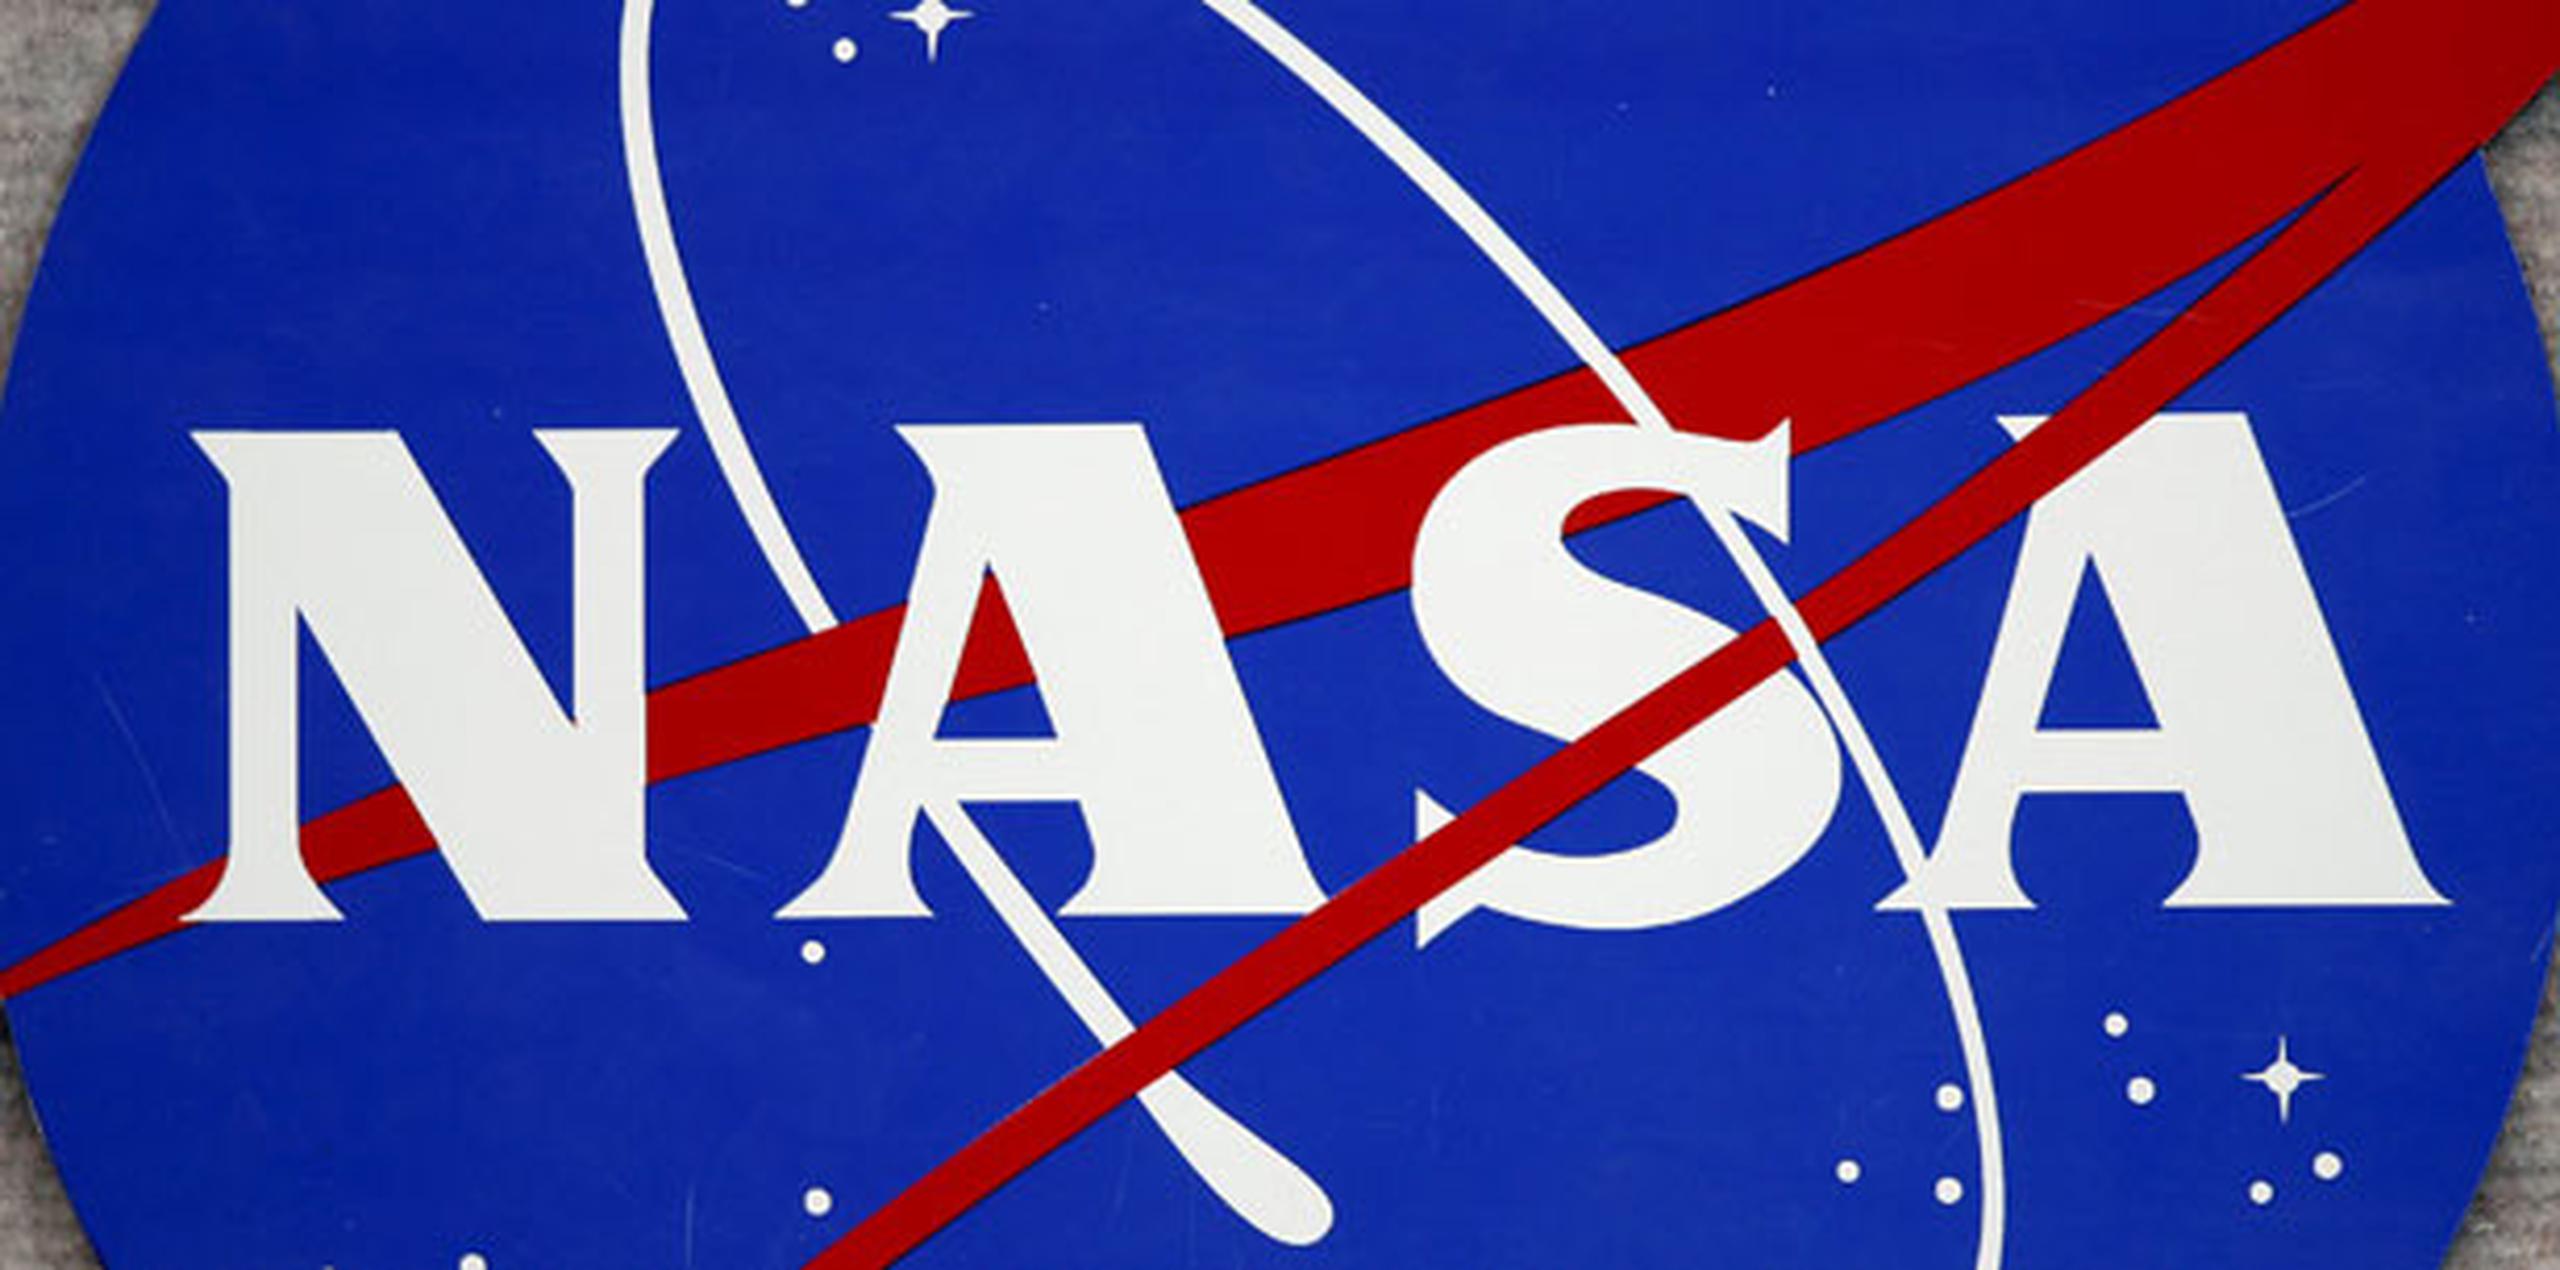 La SAPR está afiliada a la NASA a través de Puerto Rico Space Grant Consortium desde octubre 2002 y sus servicios educativos están avalados por dicha institución. (Archivo)